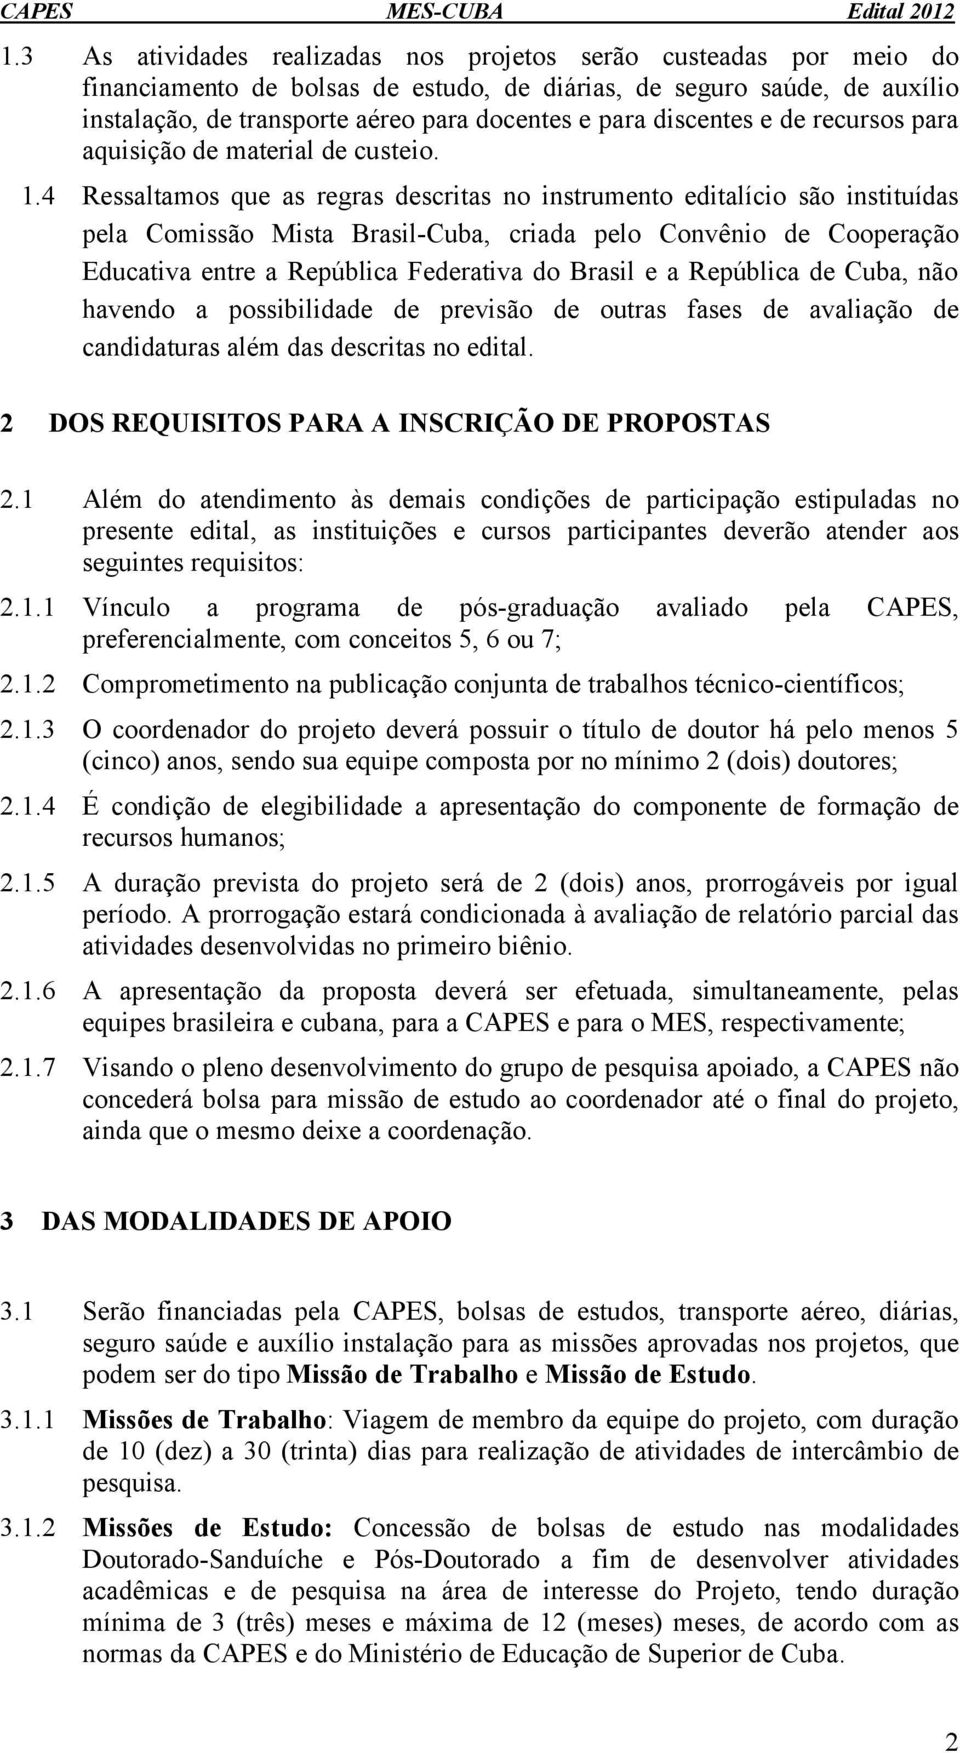 4 Ressaltamos que as regras descritas no instrumento editalício são instituídas pela Comissão Mista Brasil-Cuba, criada pelo Convênio de Cooperação Educativa entre a República Federativa do Brasil e